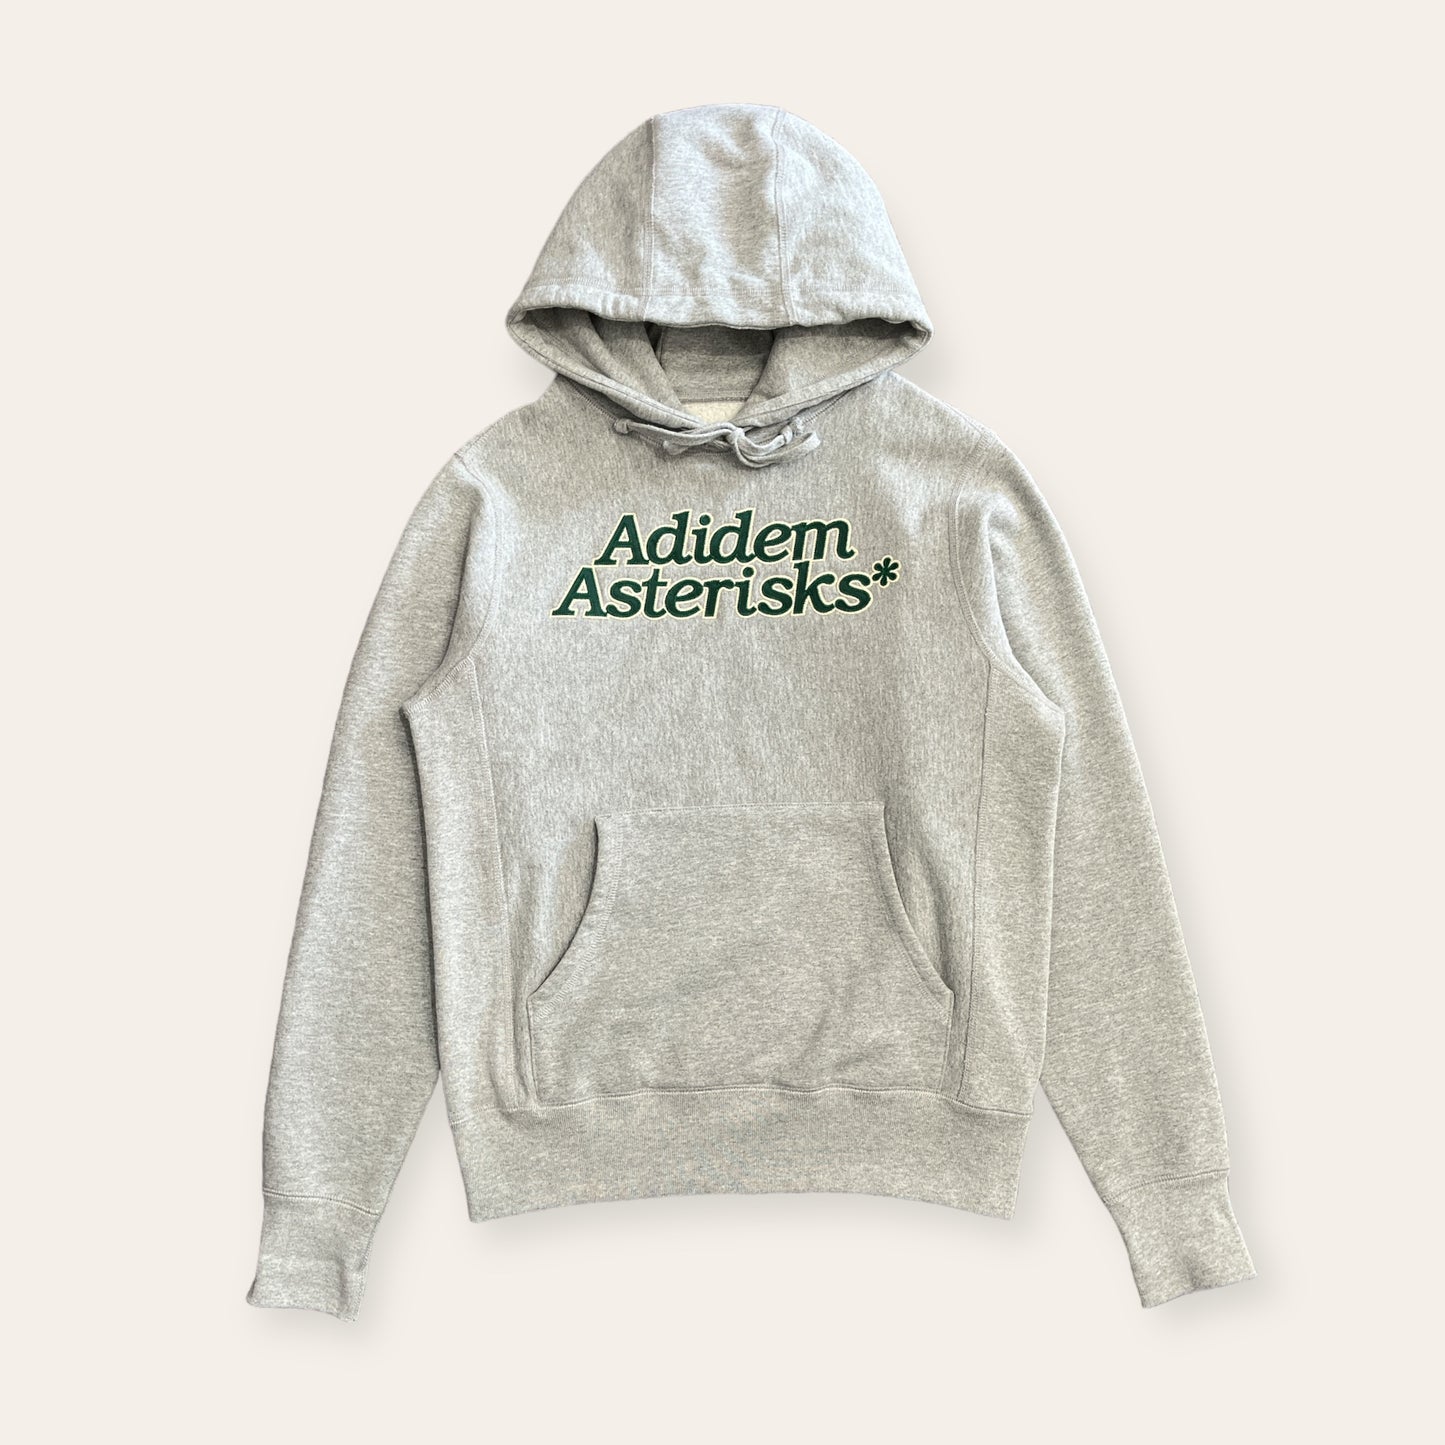 Adidem Asterisks* Grey Hoodie Size XS